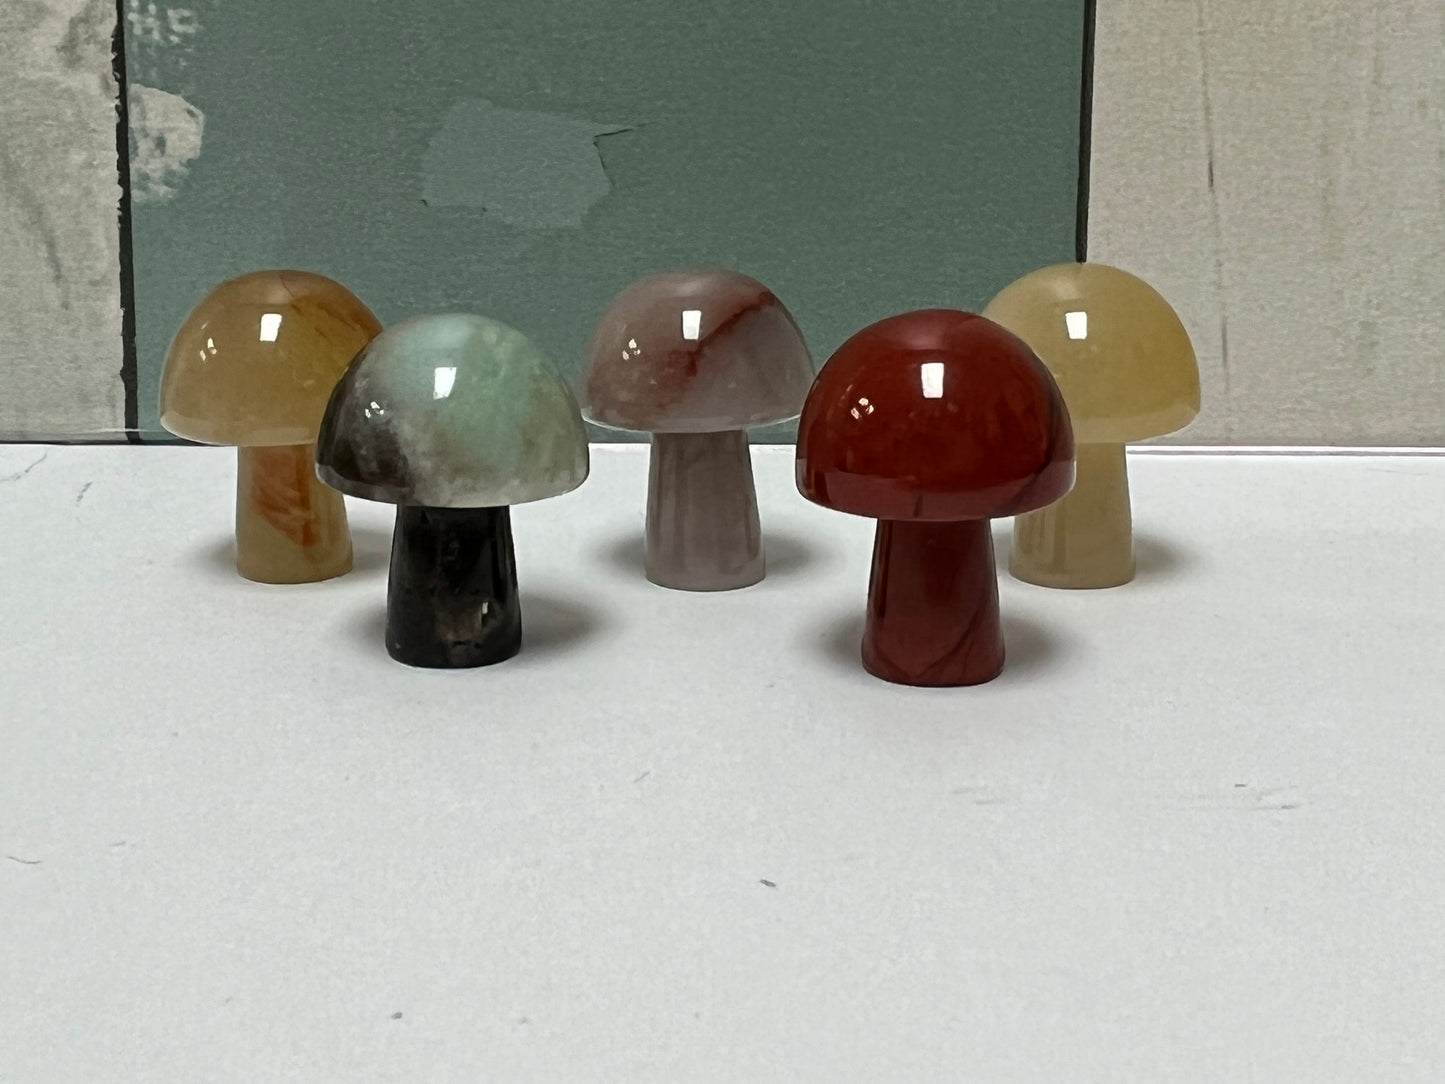 Crystal Mushroom - 2cm